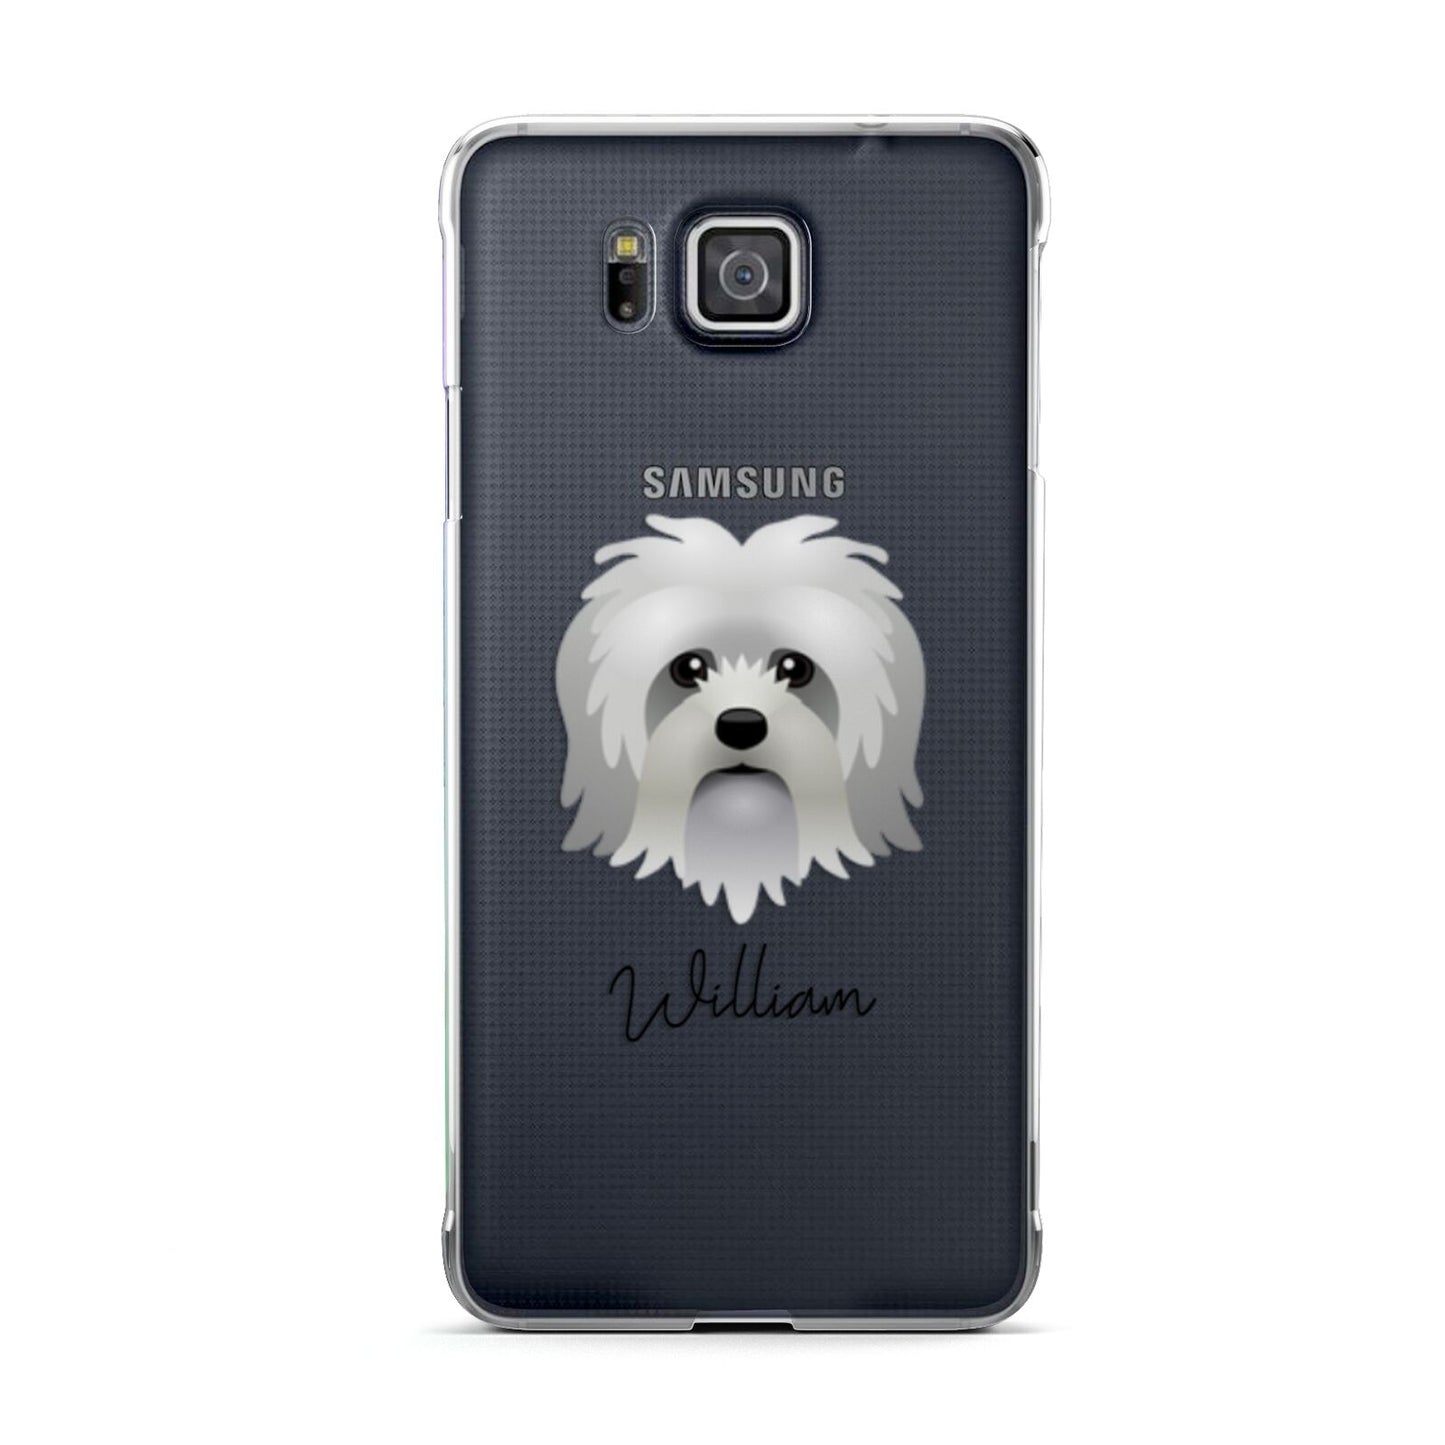 Lo wchen Personalised Samsung Galaxy Alpha Case